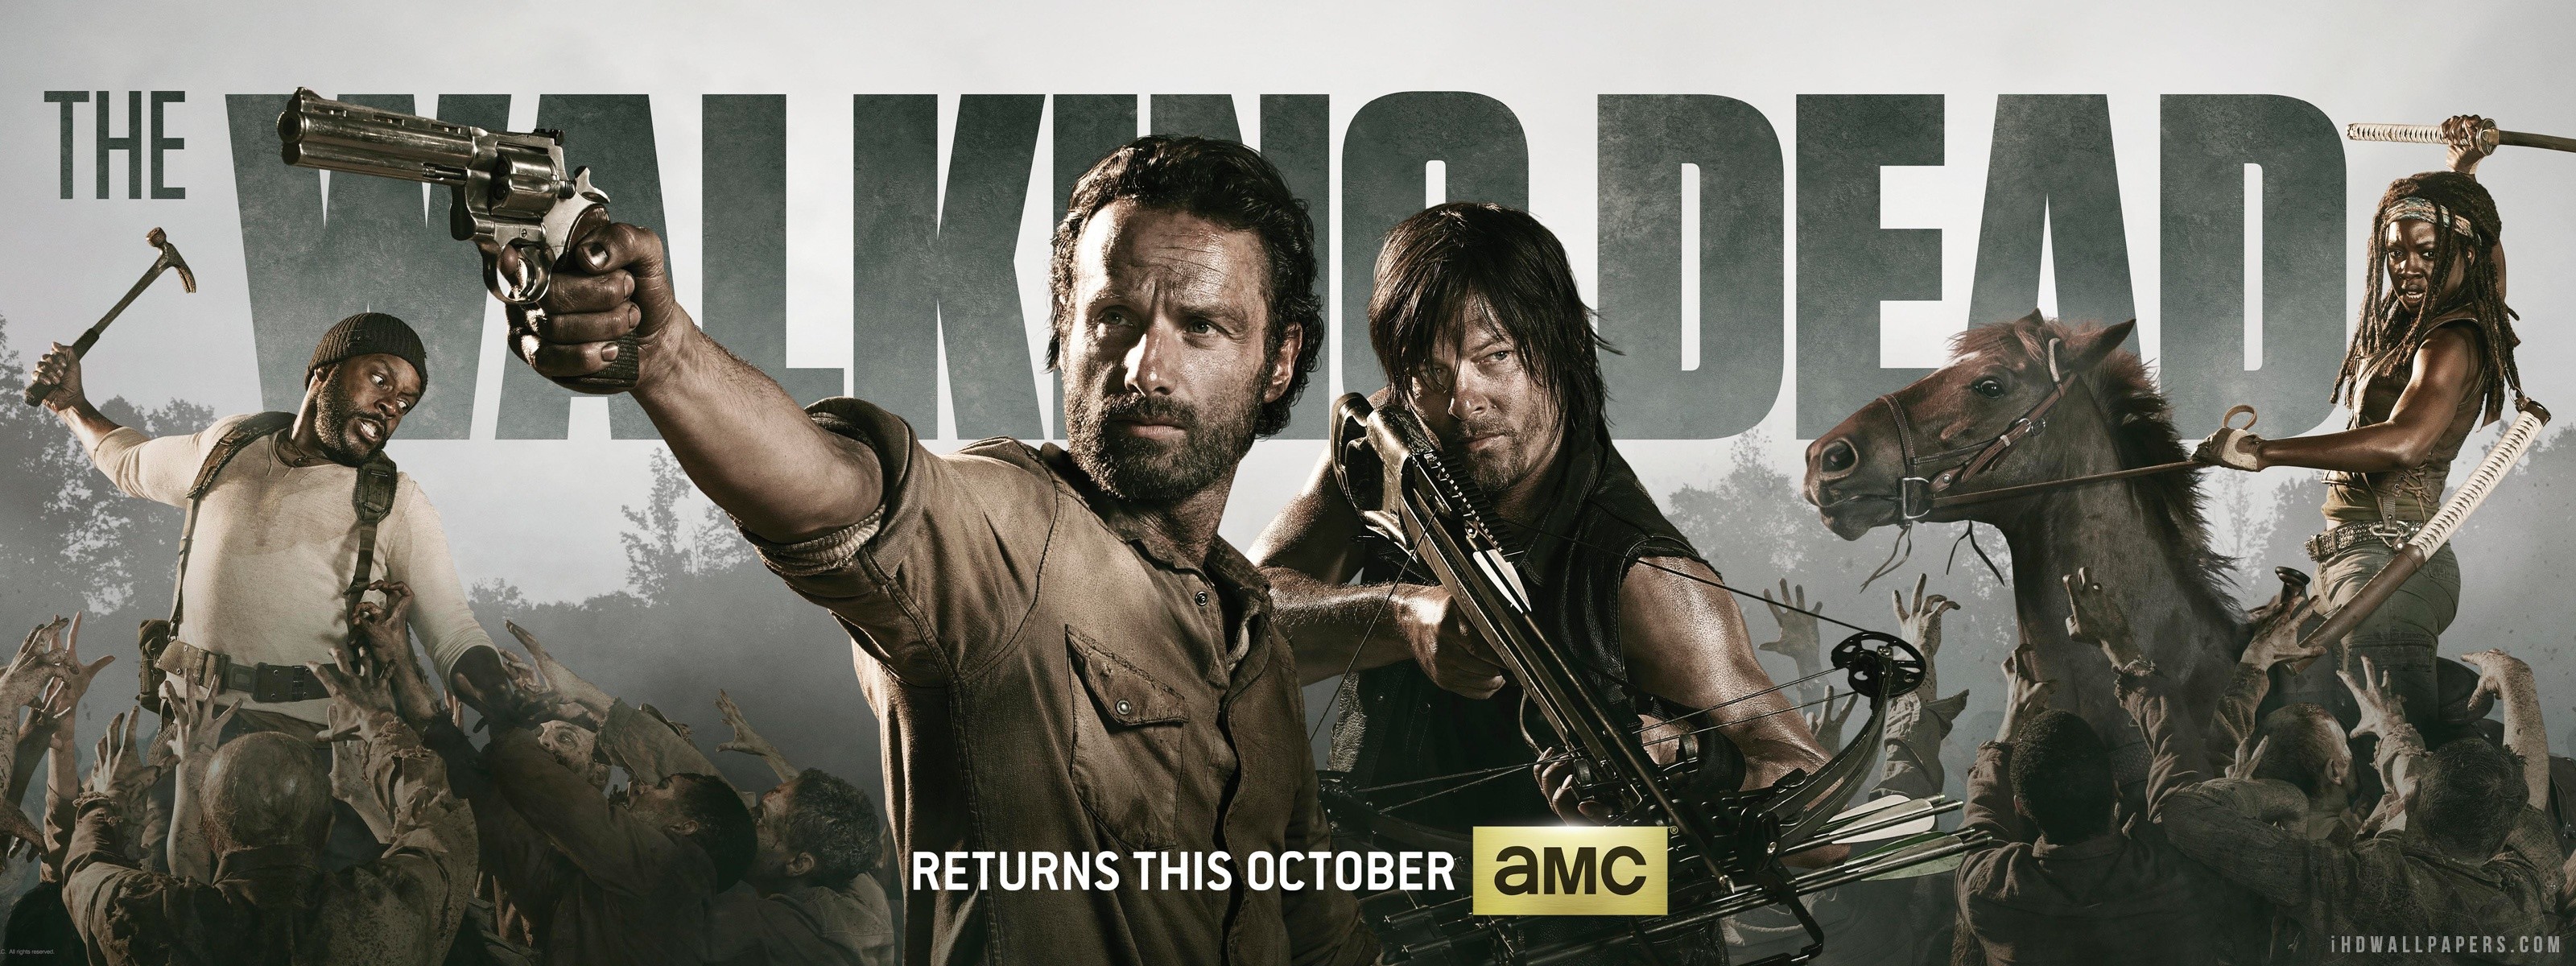 Download The Walking Dead Rick Grimes Wallpaper  Wallpaperscom